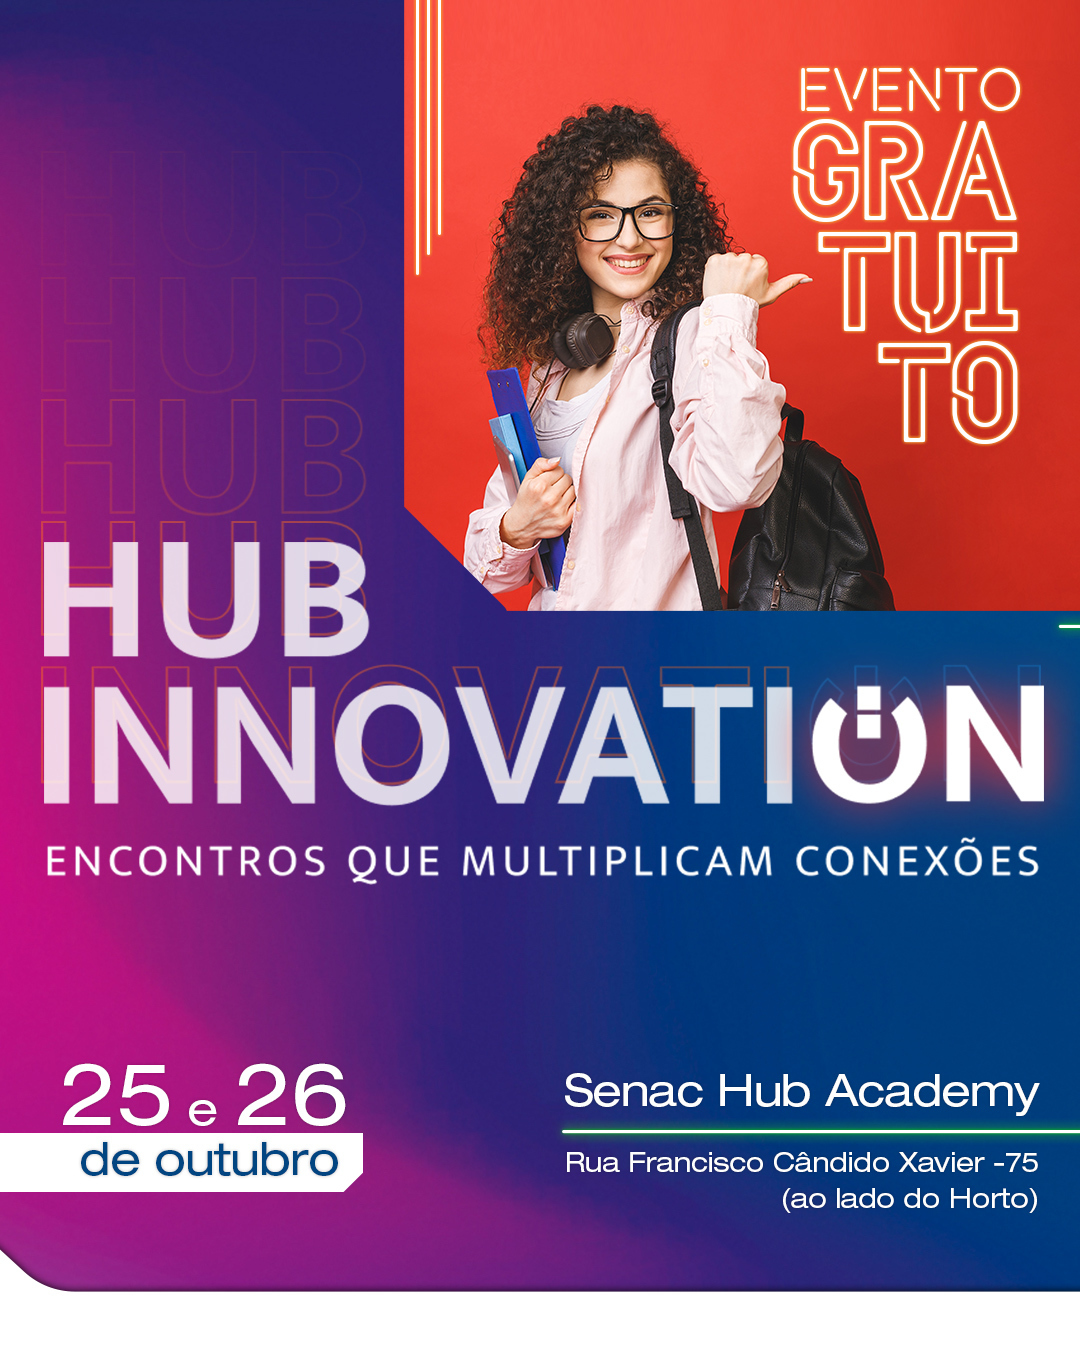 Você está visualizando atualmente Evento gratuito no Senac Hub Academy oferece palestras e workshops sobre inovação e tendências do mercado de trabalho